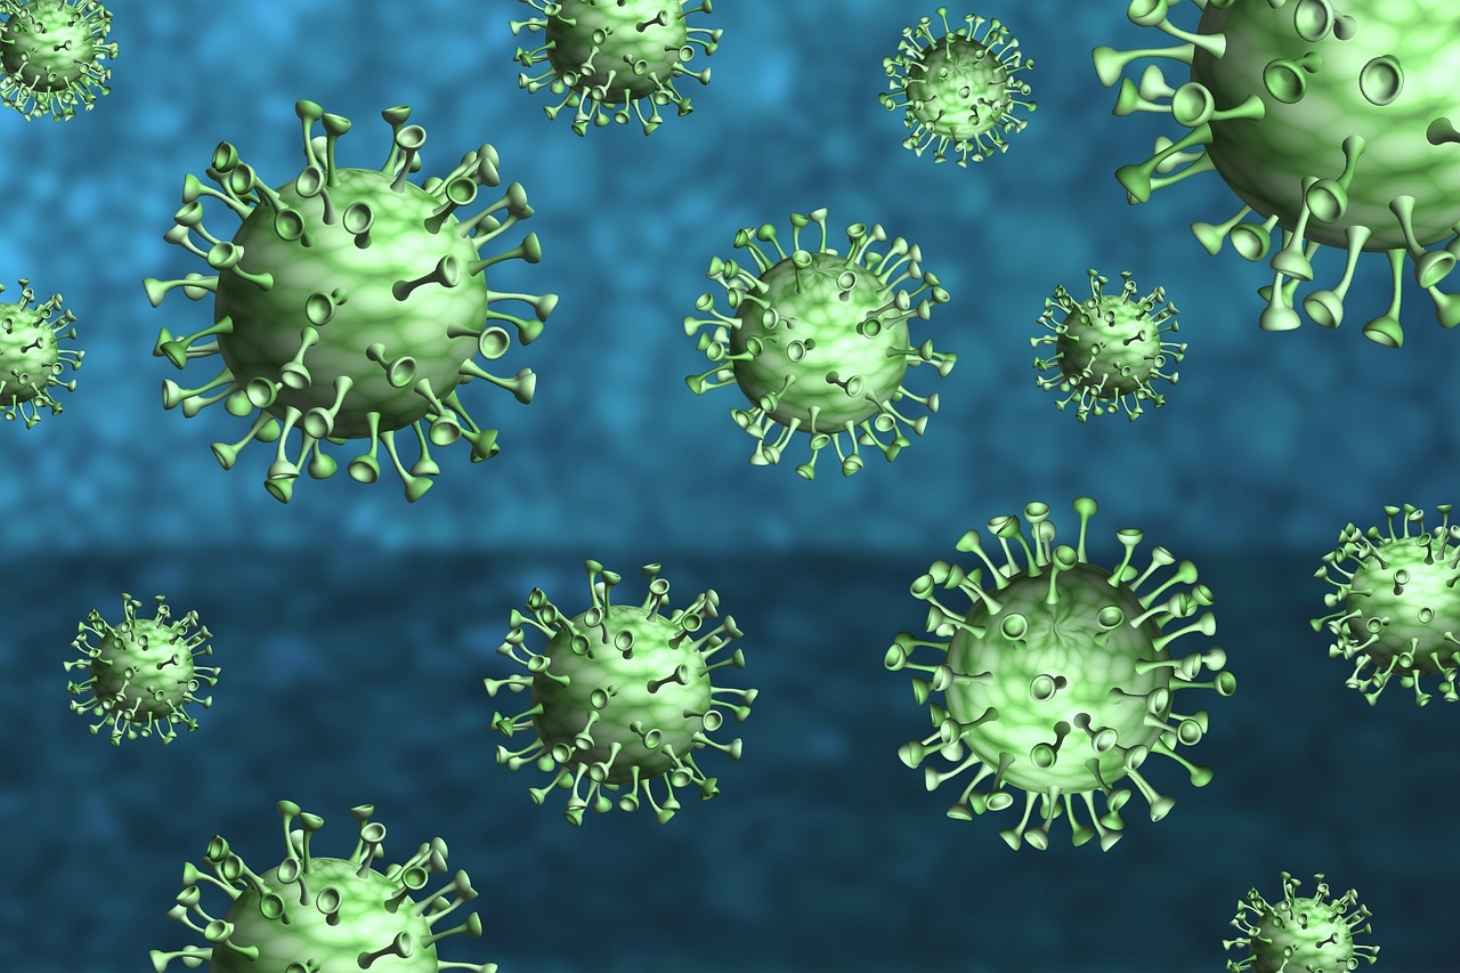 Transmissão do novo coronavírus continua em queda, diz Fiocruz | Jornal da Orla